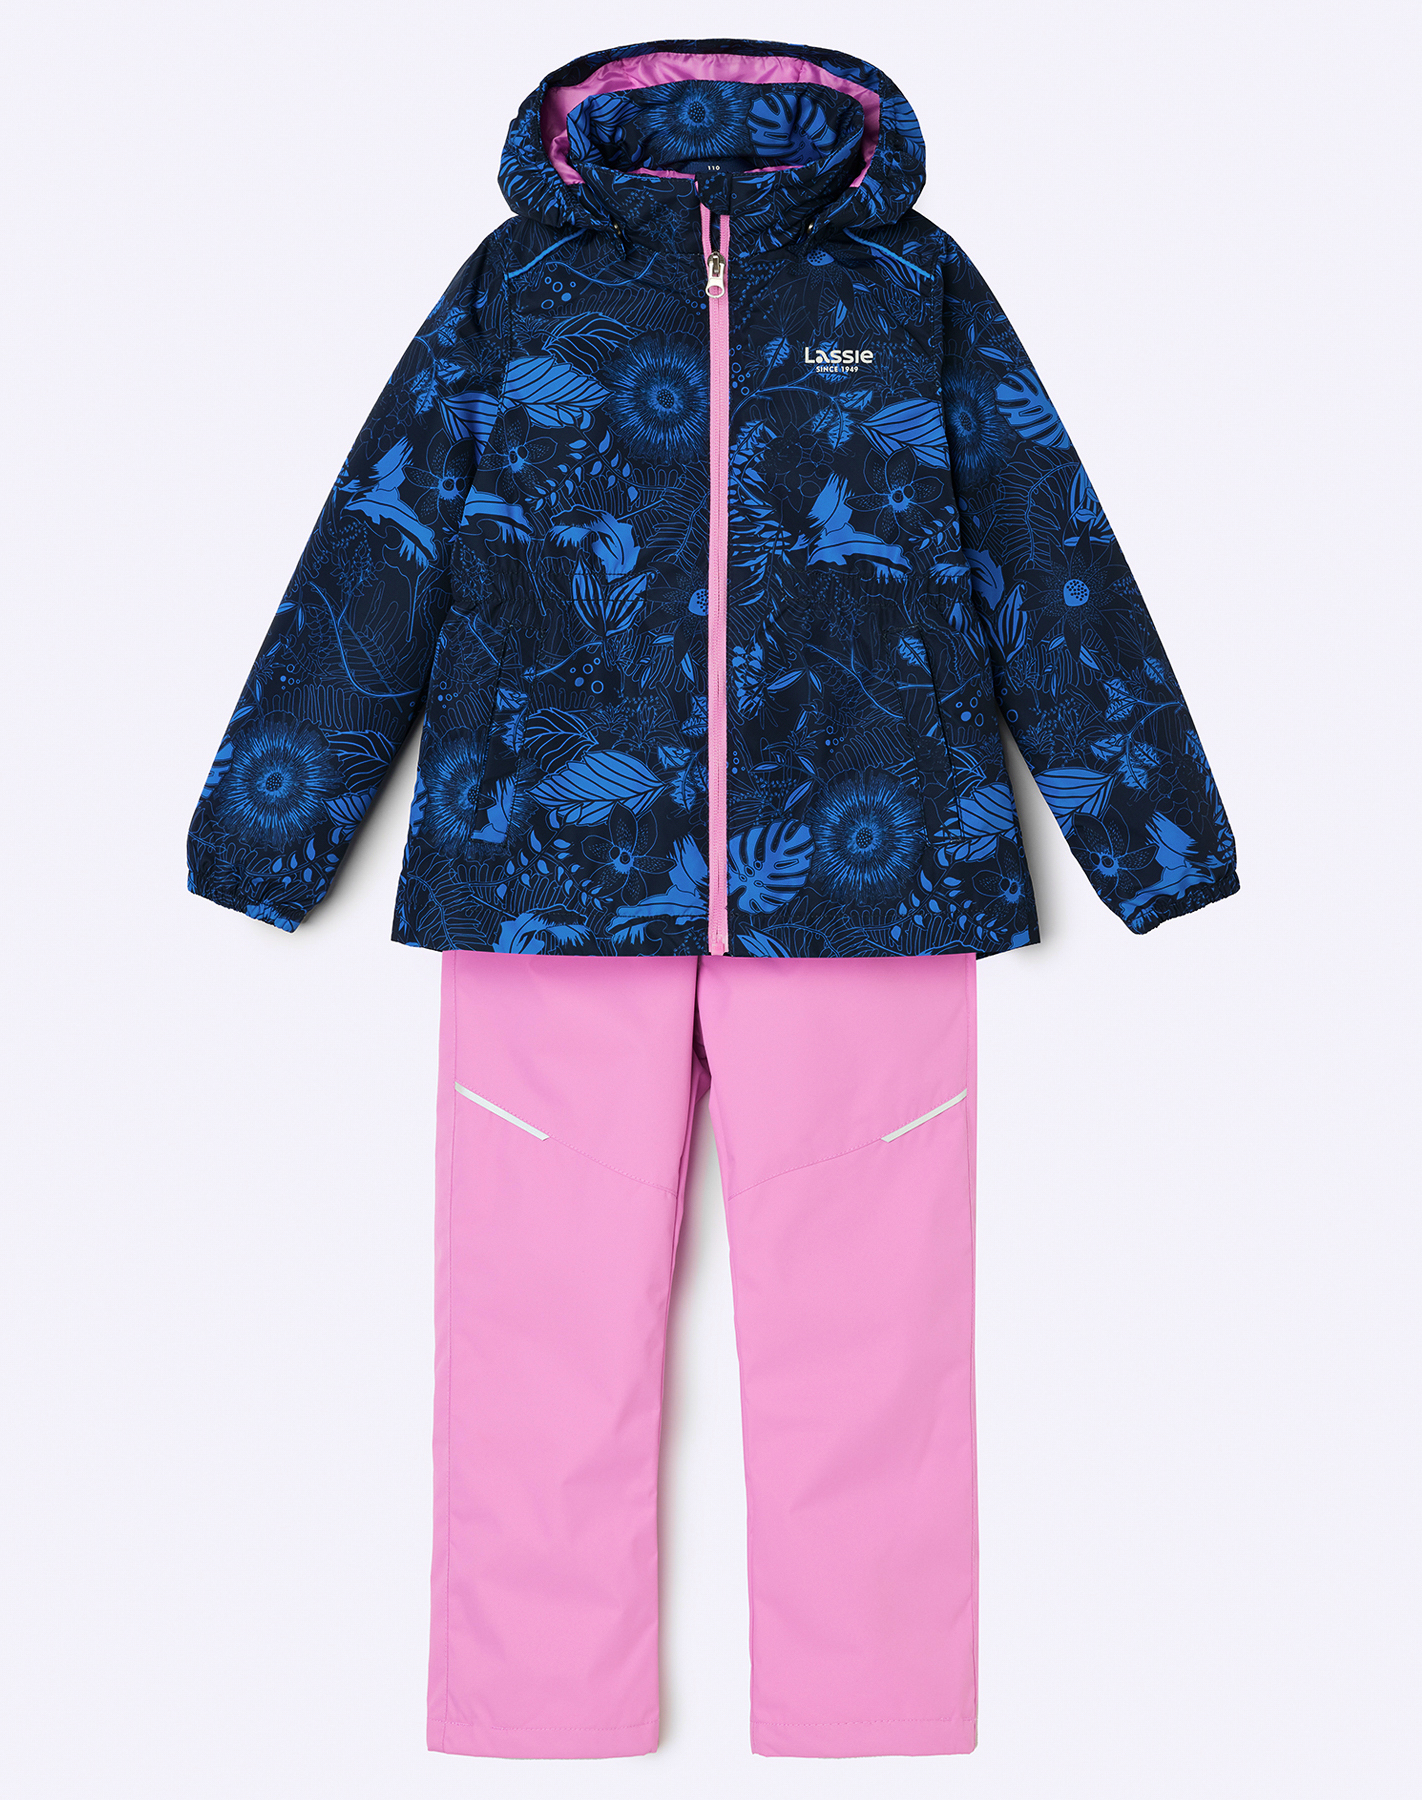 Комплект верхней одежды детский Lassie Manna 7100042A, 4741-синий с рисунком  розовый, 128